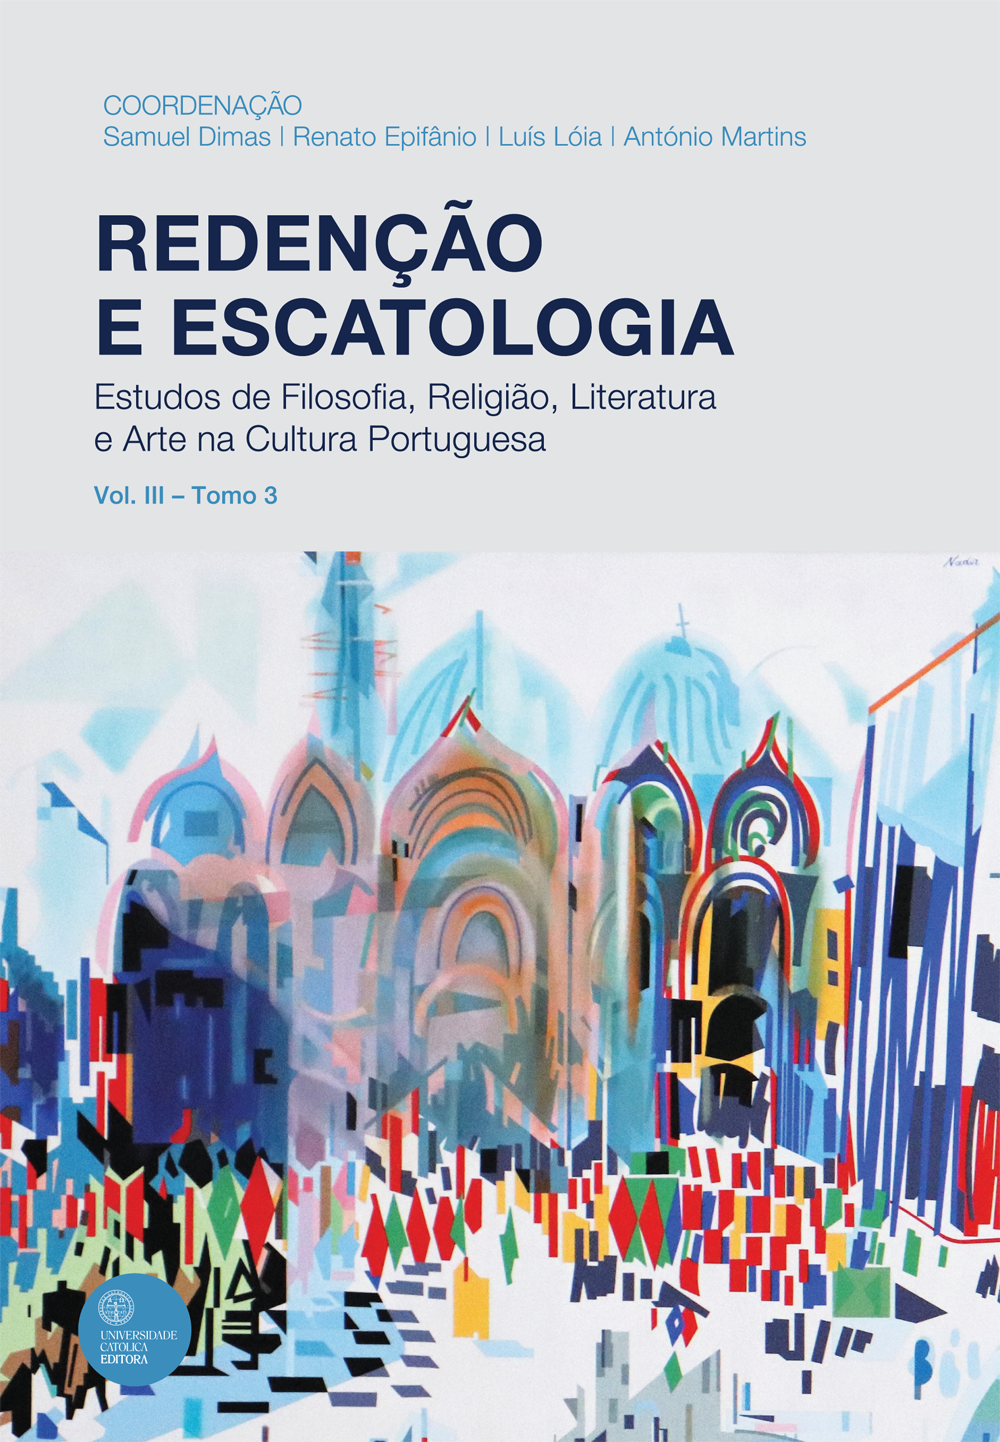 REDENÇÃO E ESCATOLOGIA - VOL. III - TOMO 3
Estudos de Filosofia, Religião, Literatura e Arte na Cultura Portuguesa